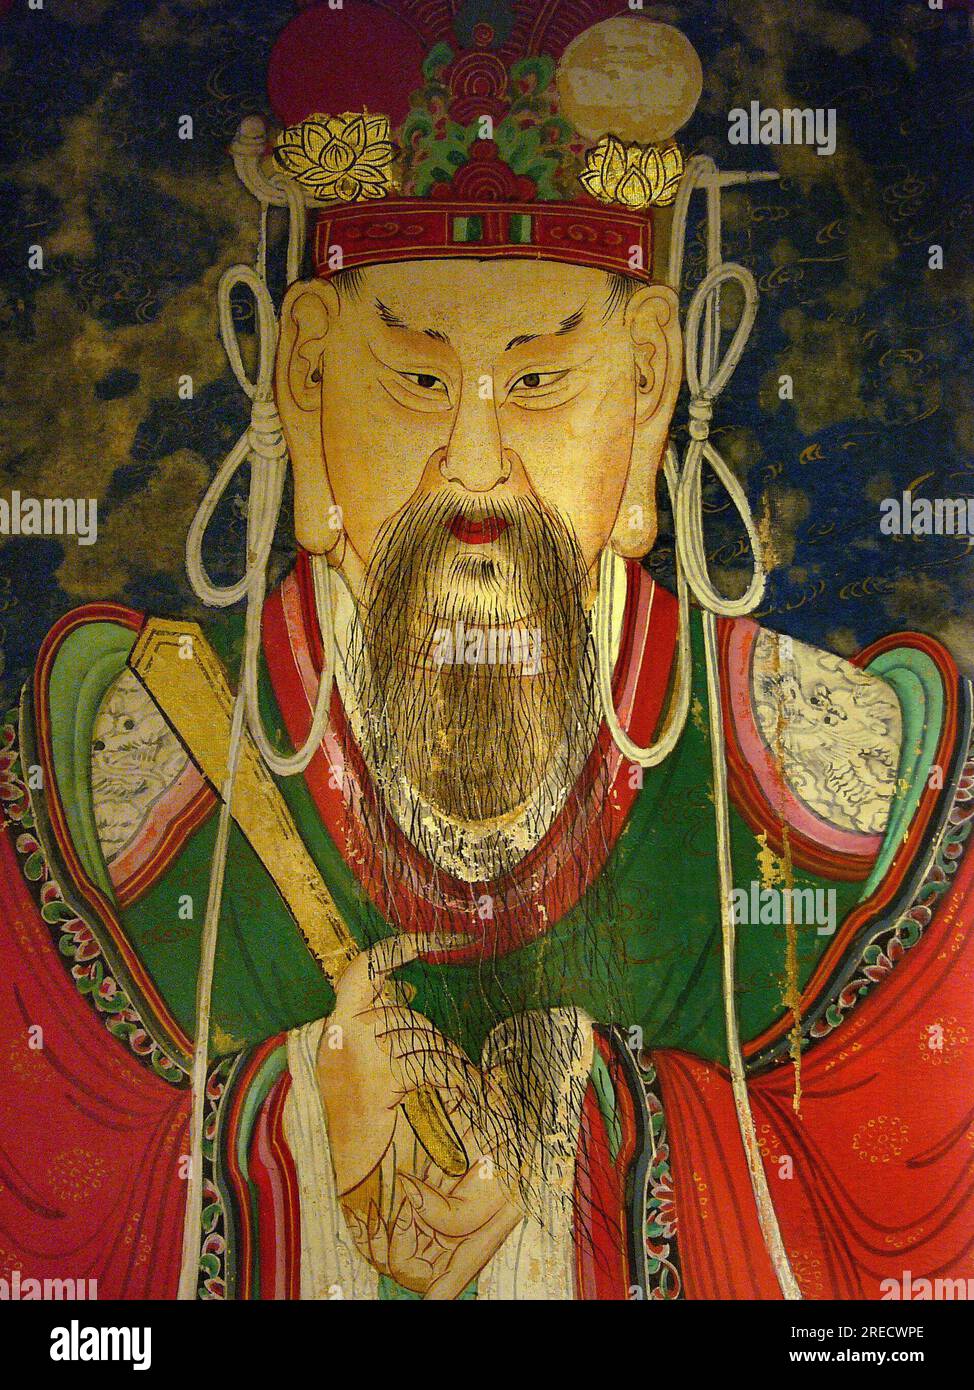 Detail, portrait du Dixieme Roi (Yeonsangun, 1476-1506) - peinture sur soie, XIXe siecle, periode Joseon, Taegosa, Coree. Photographie, Musee National de Seoul, Republique de Coree Stock Photo